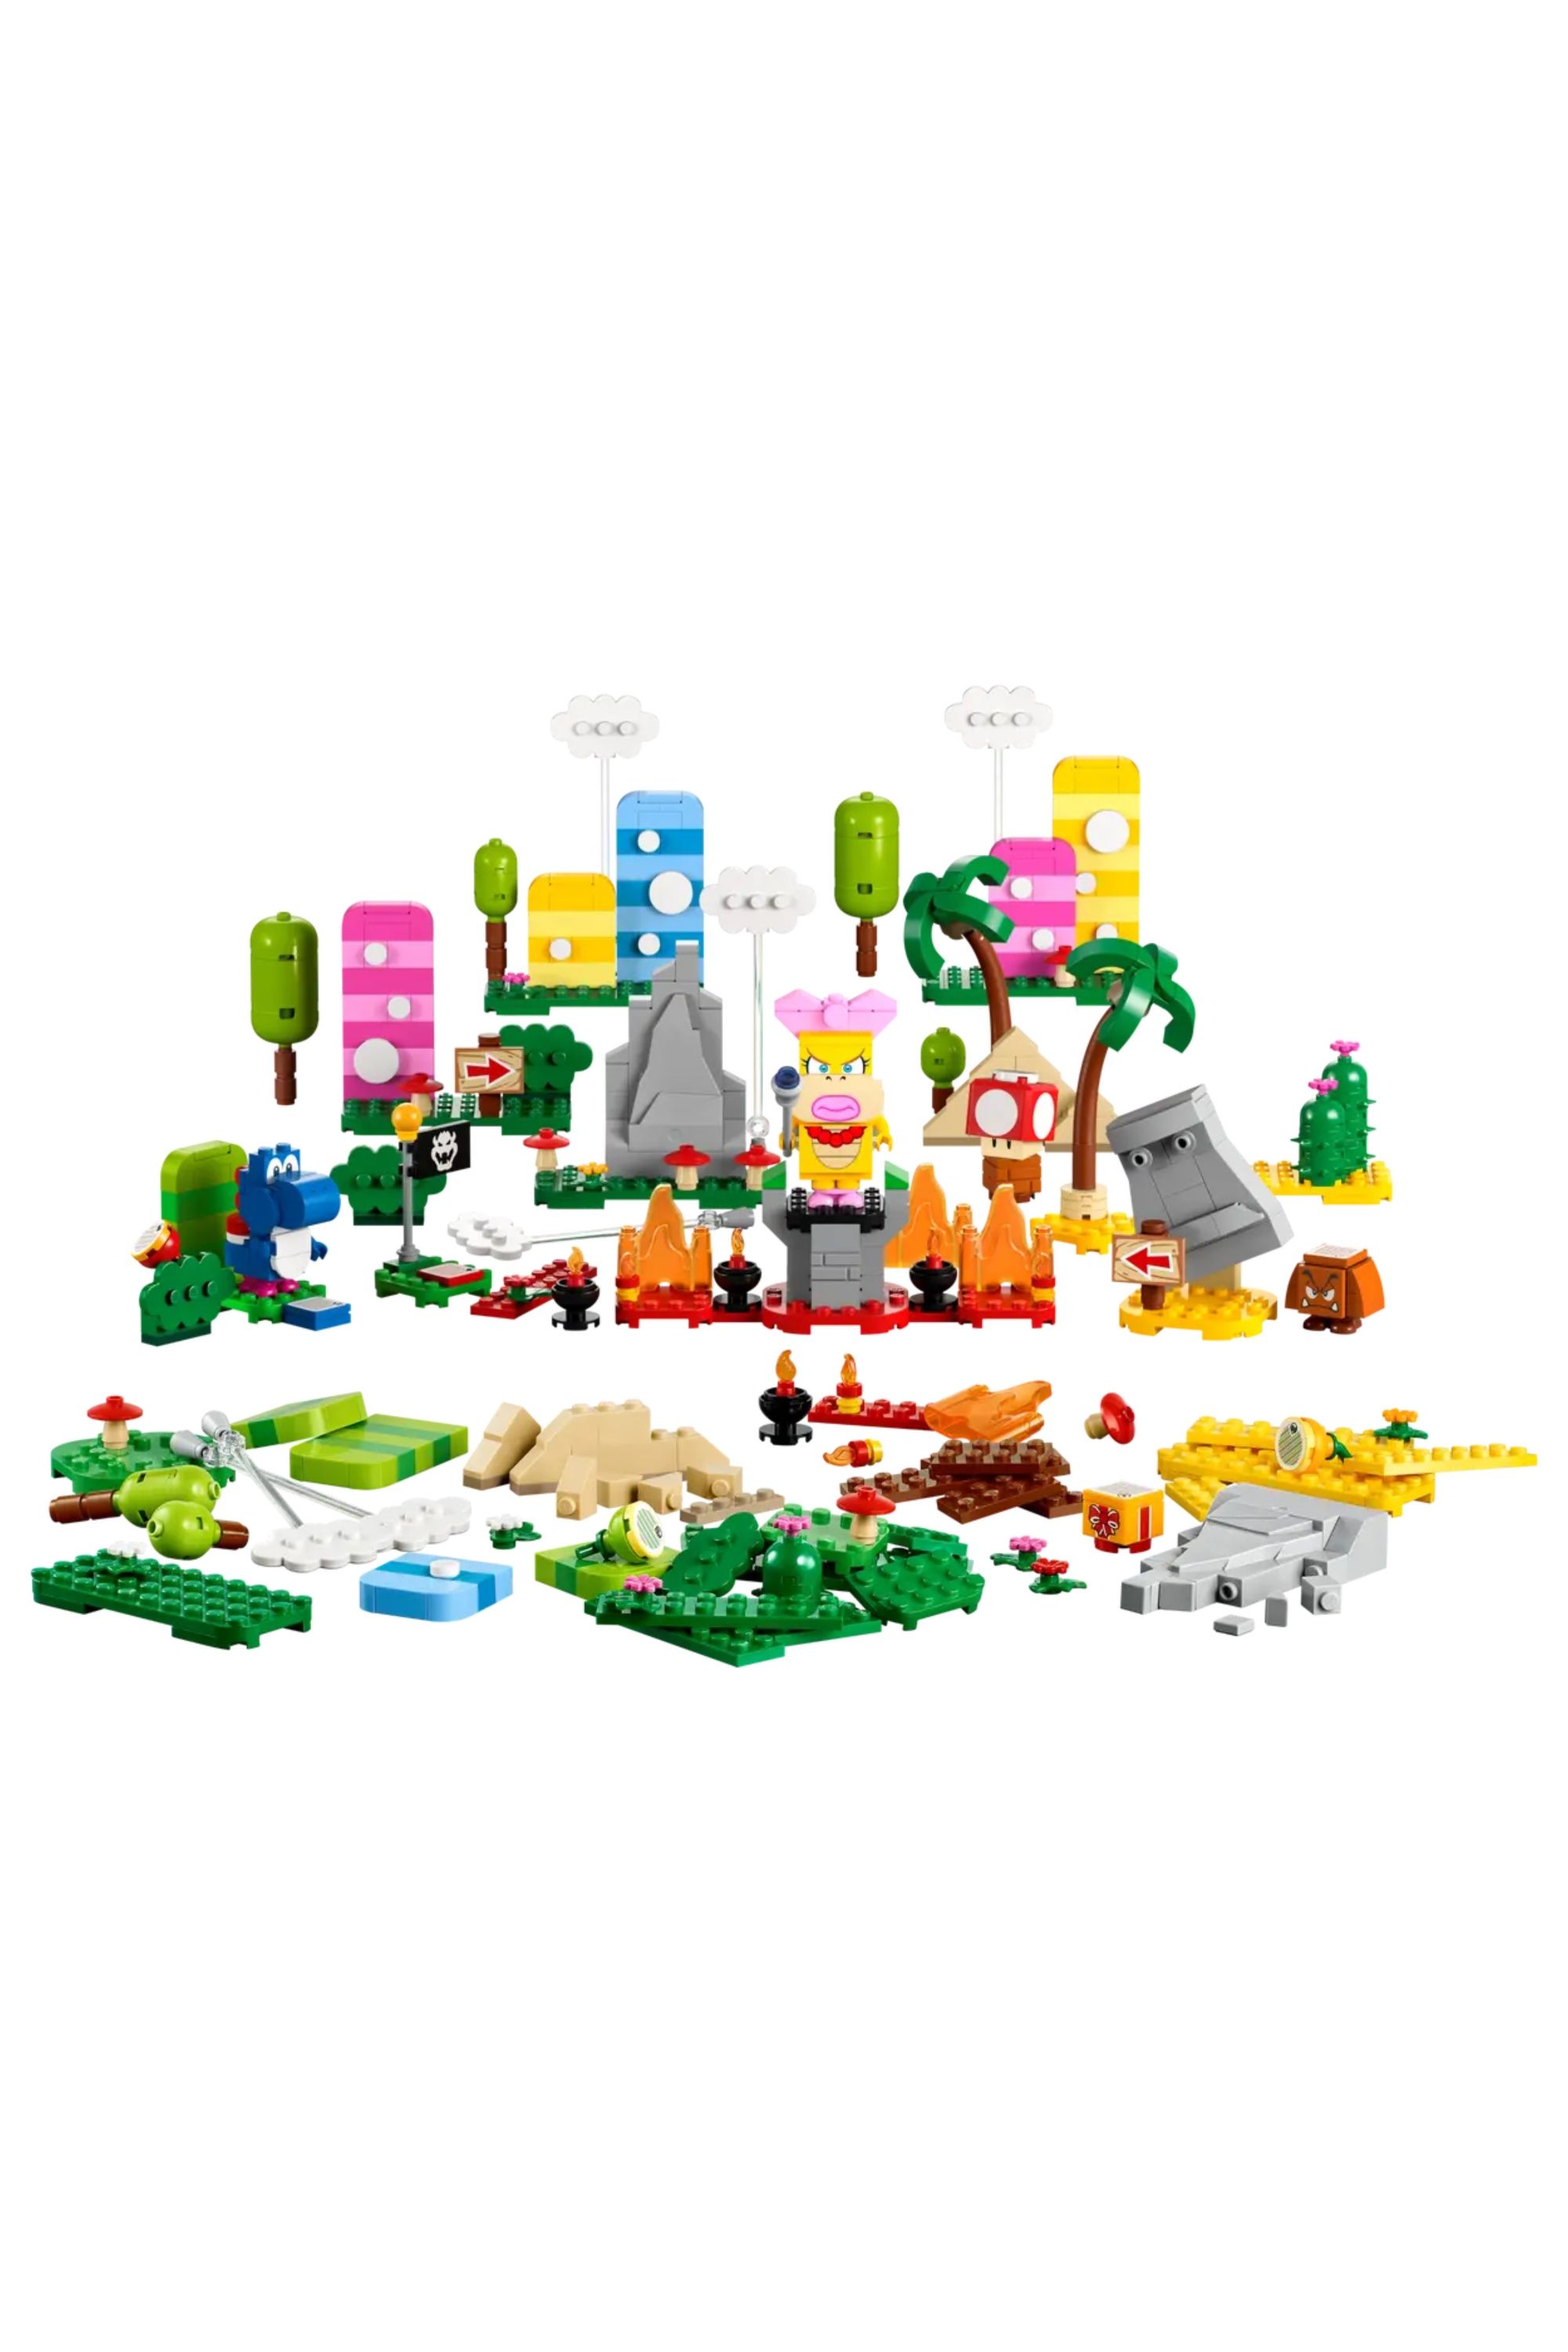 Lego Mario creativity tool box set